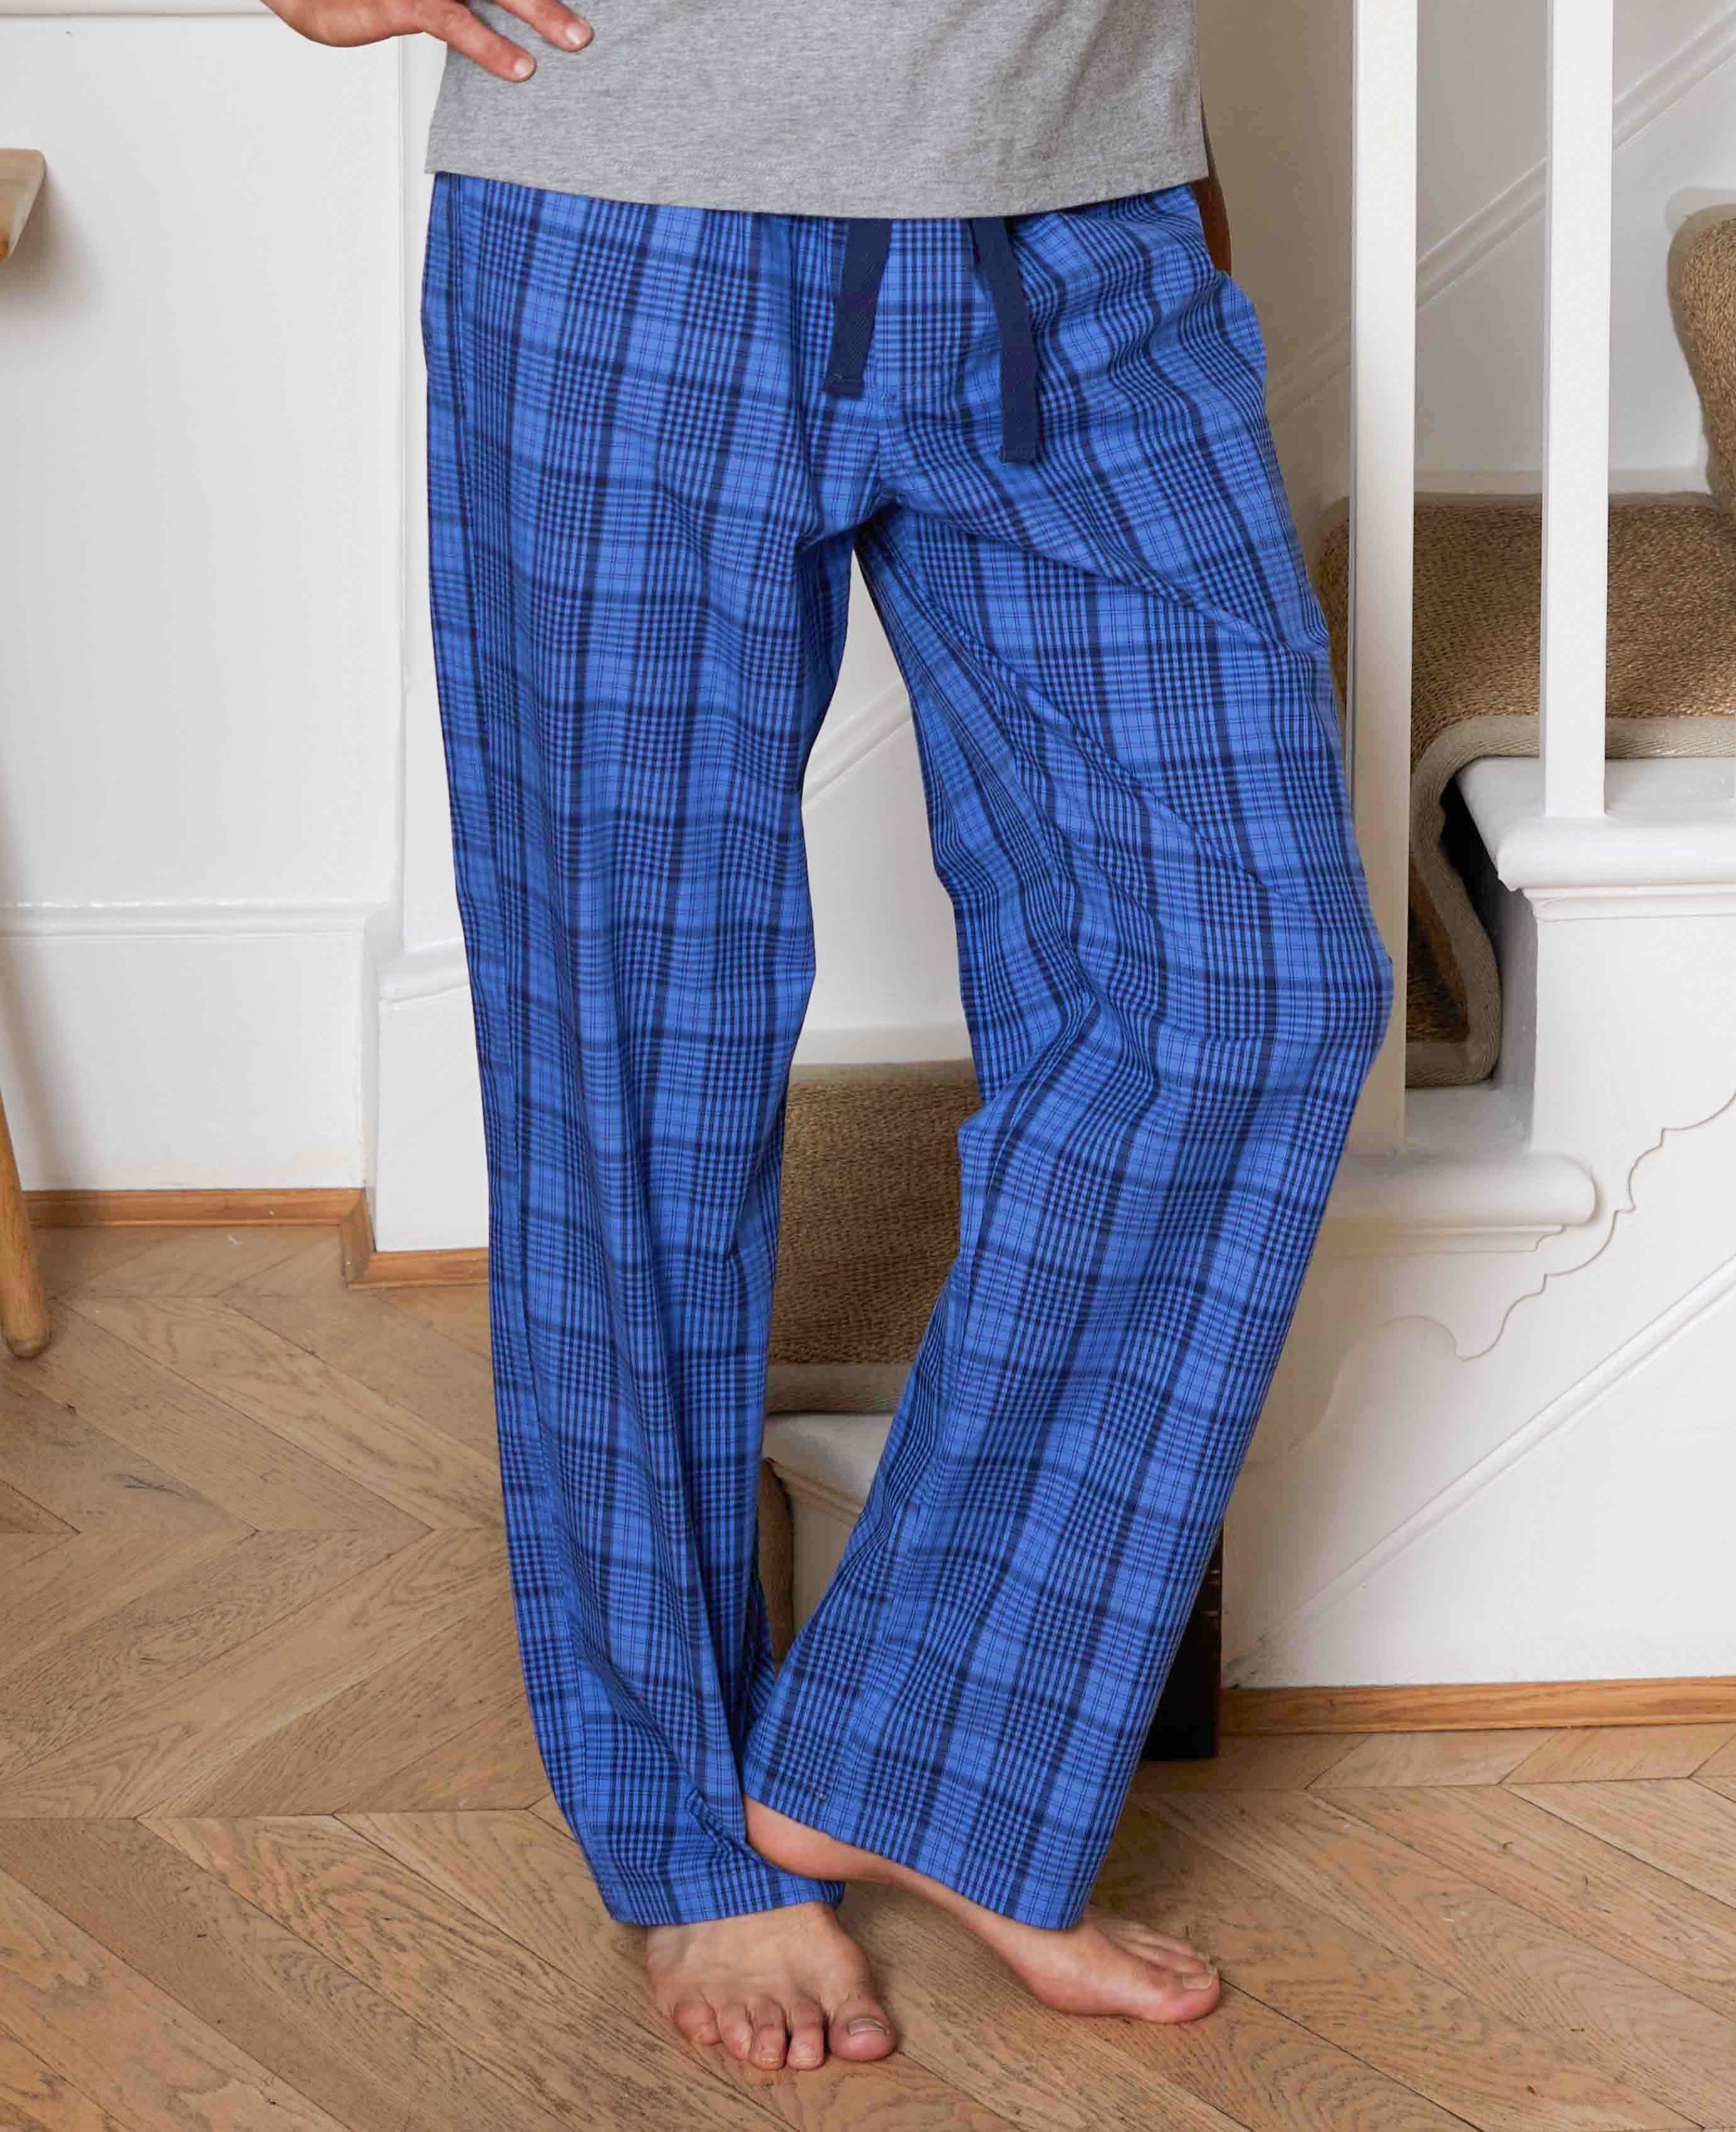 DAVID ARCHY Men's Cotton Pajama Pants Comfy Soft India | Ubuy